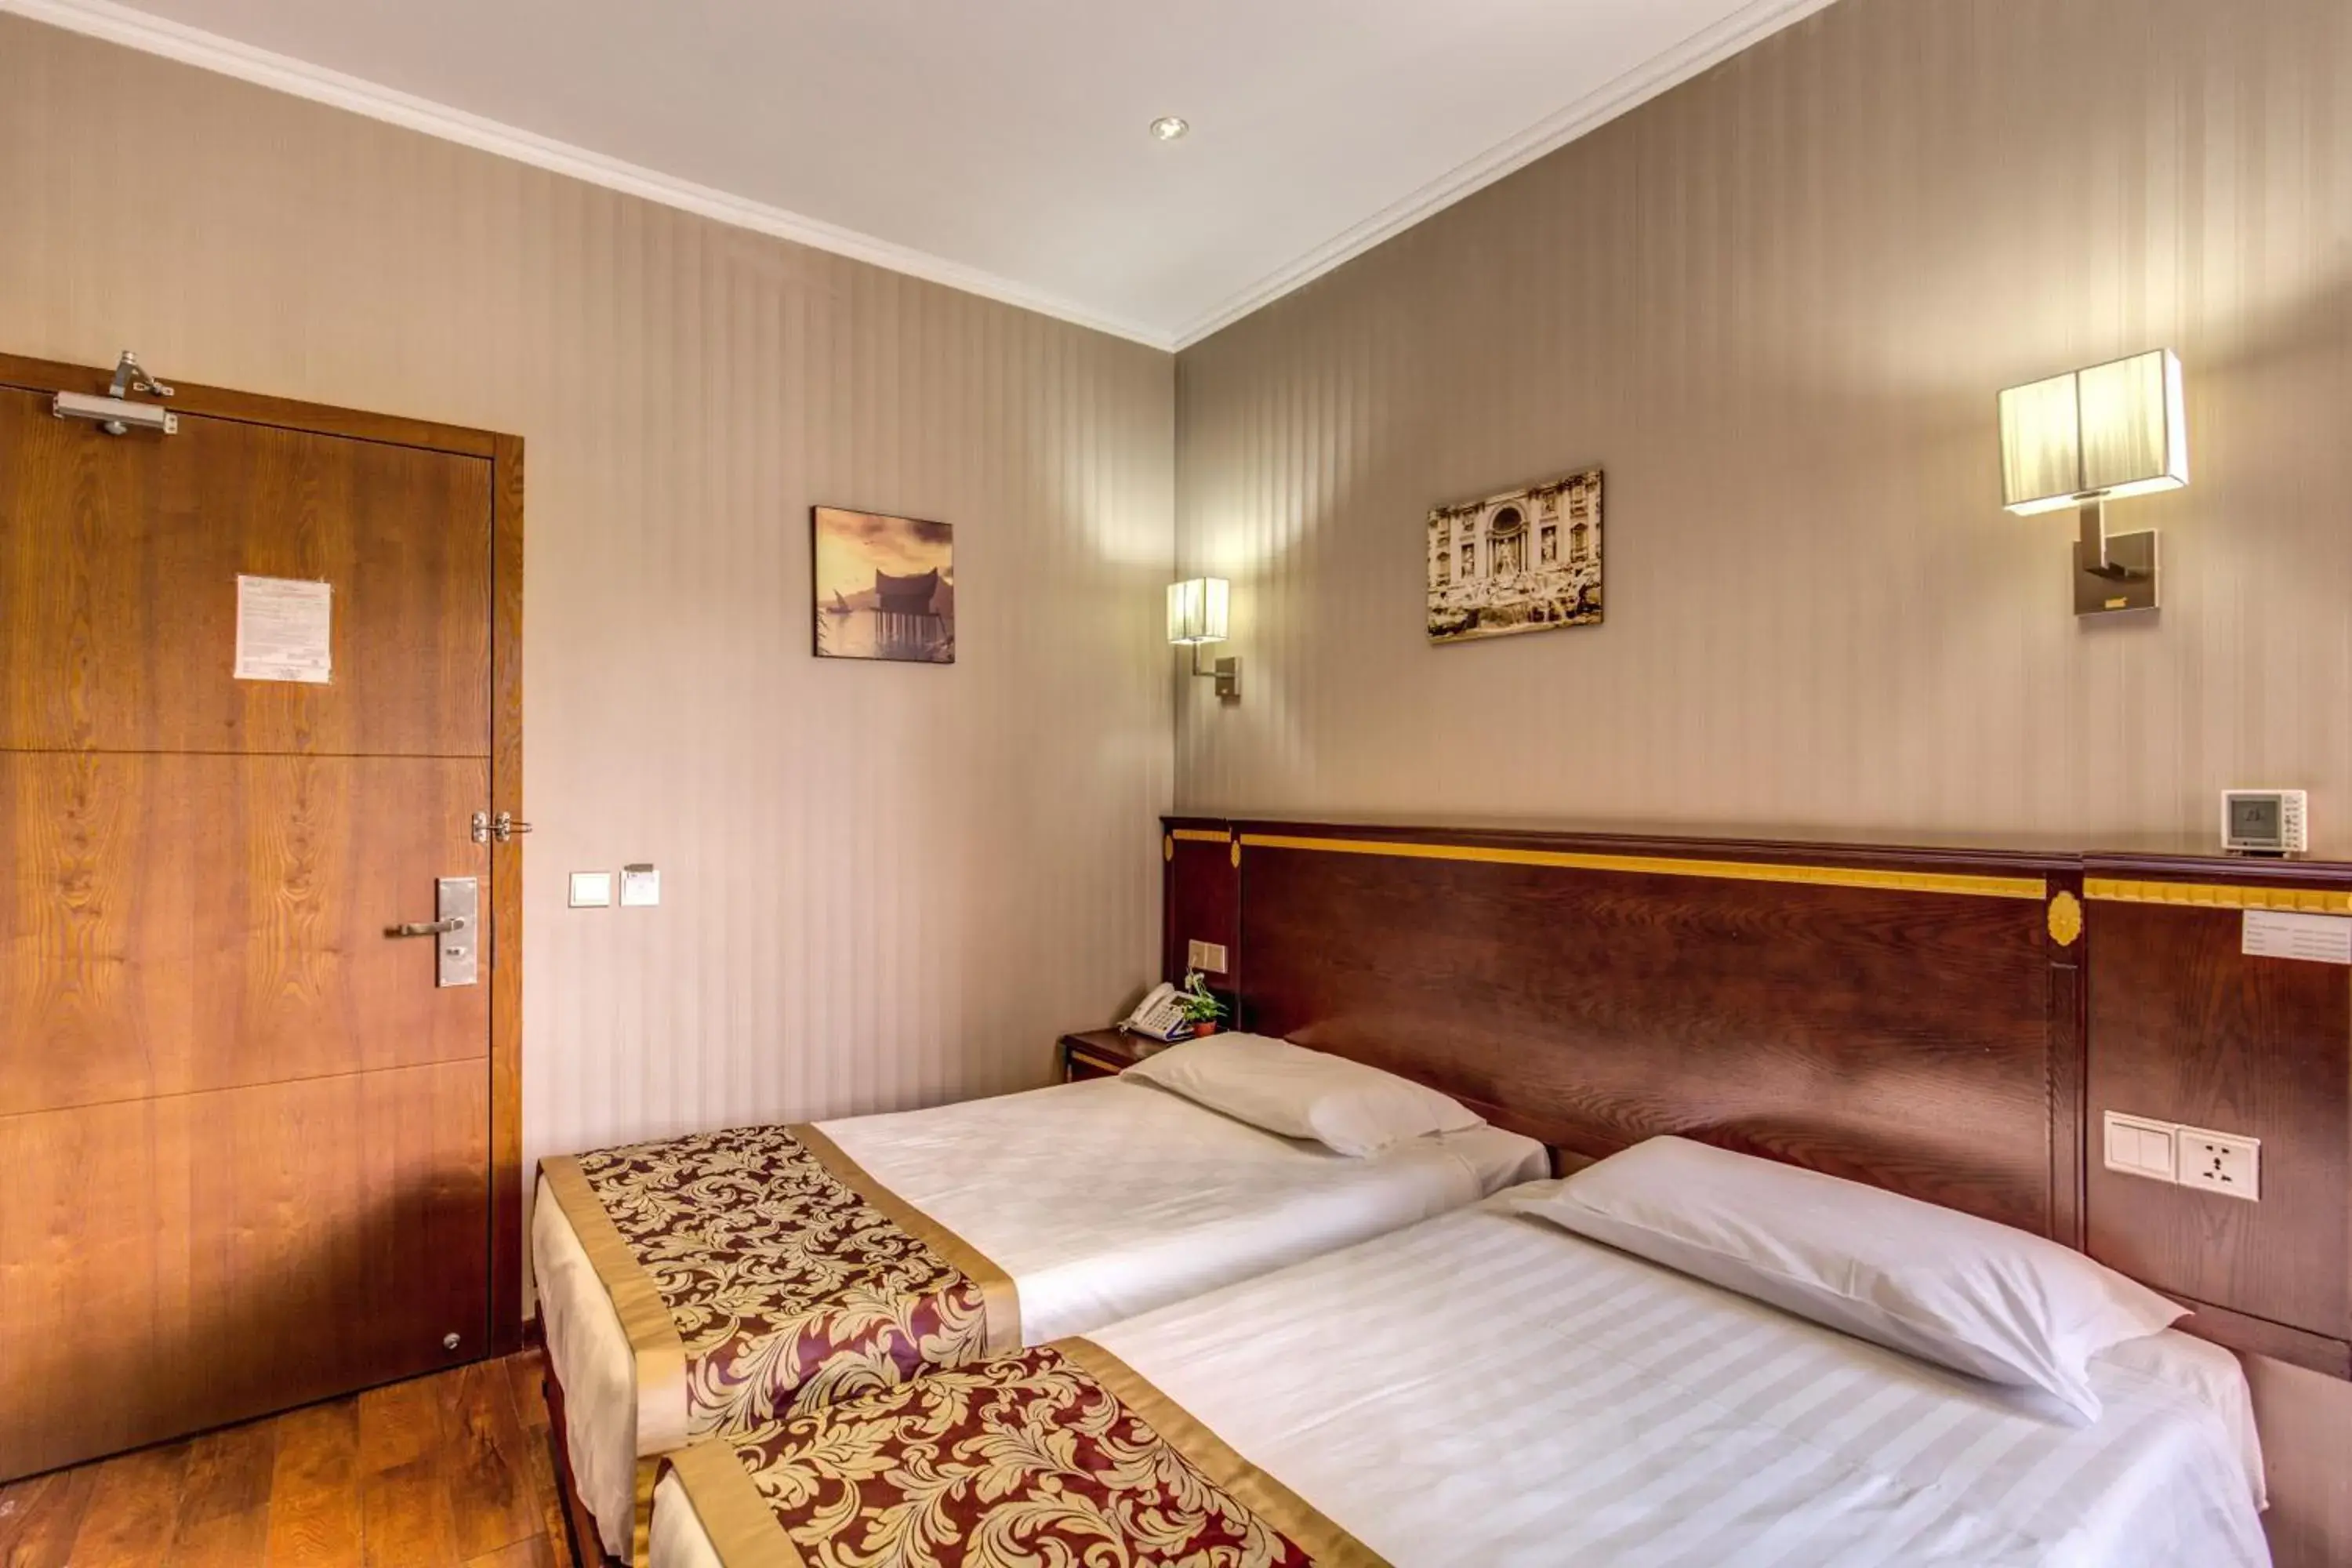 Bedroom, Room Photo in Hotel Rome Love